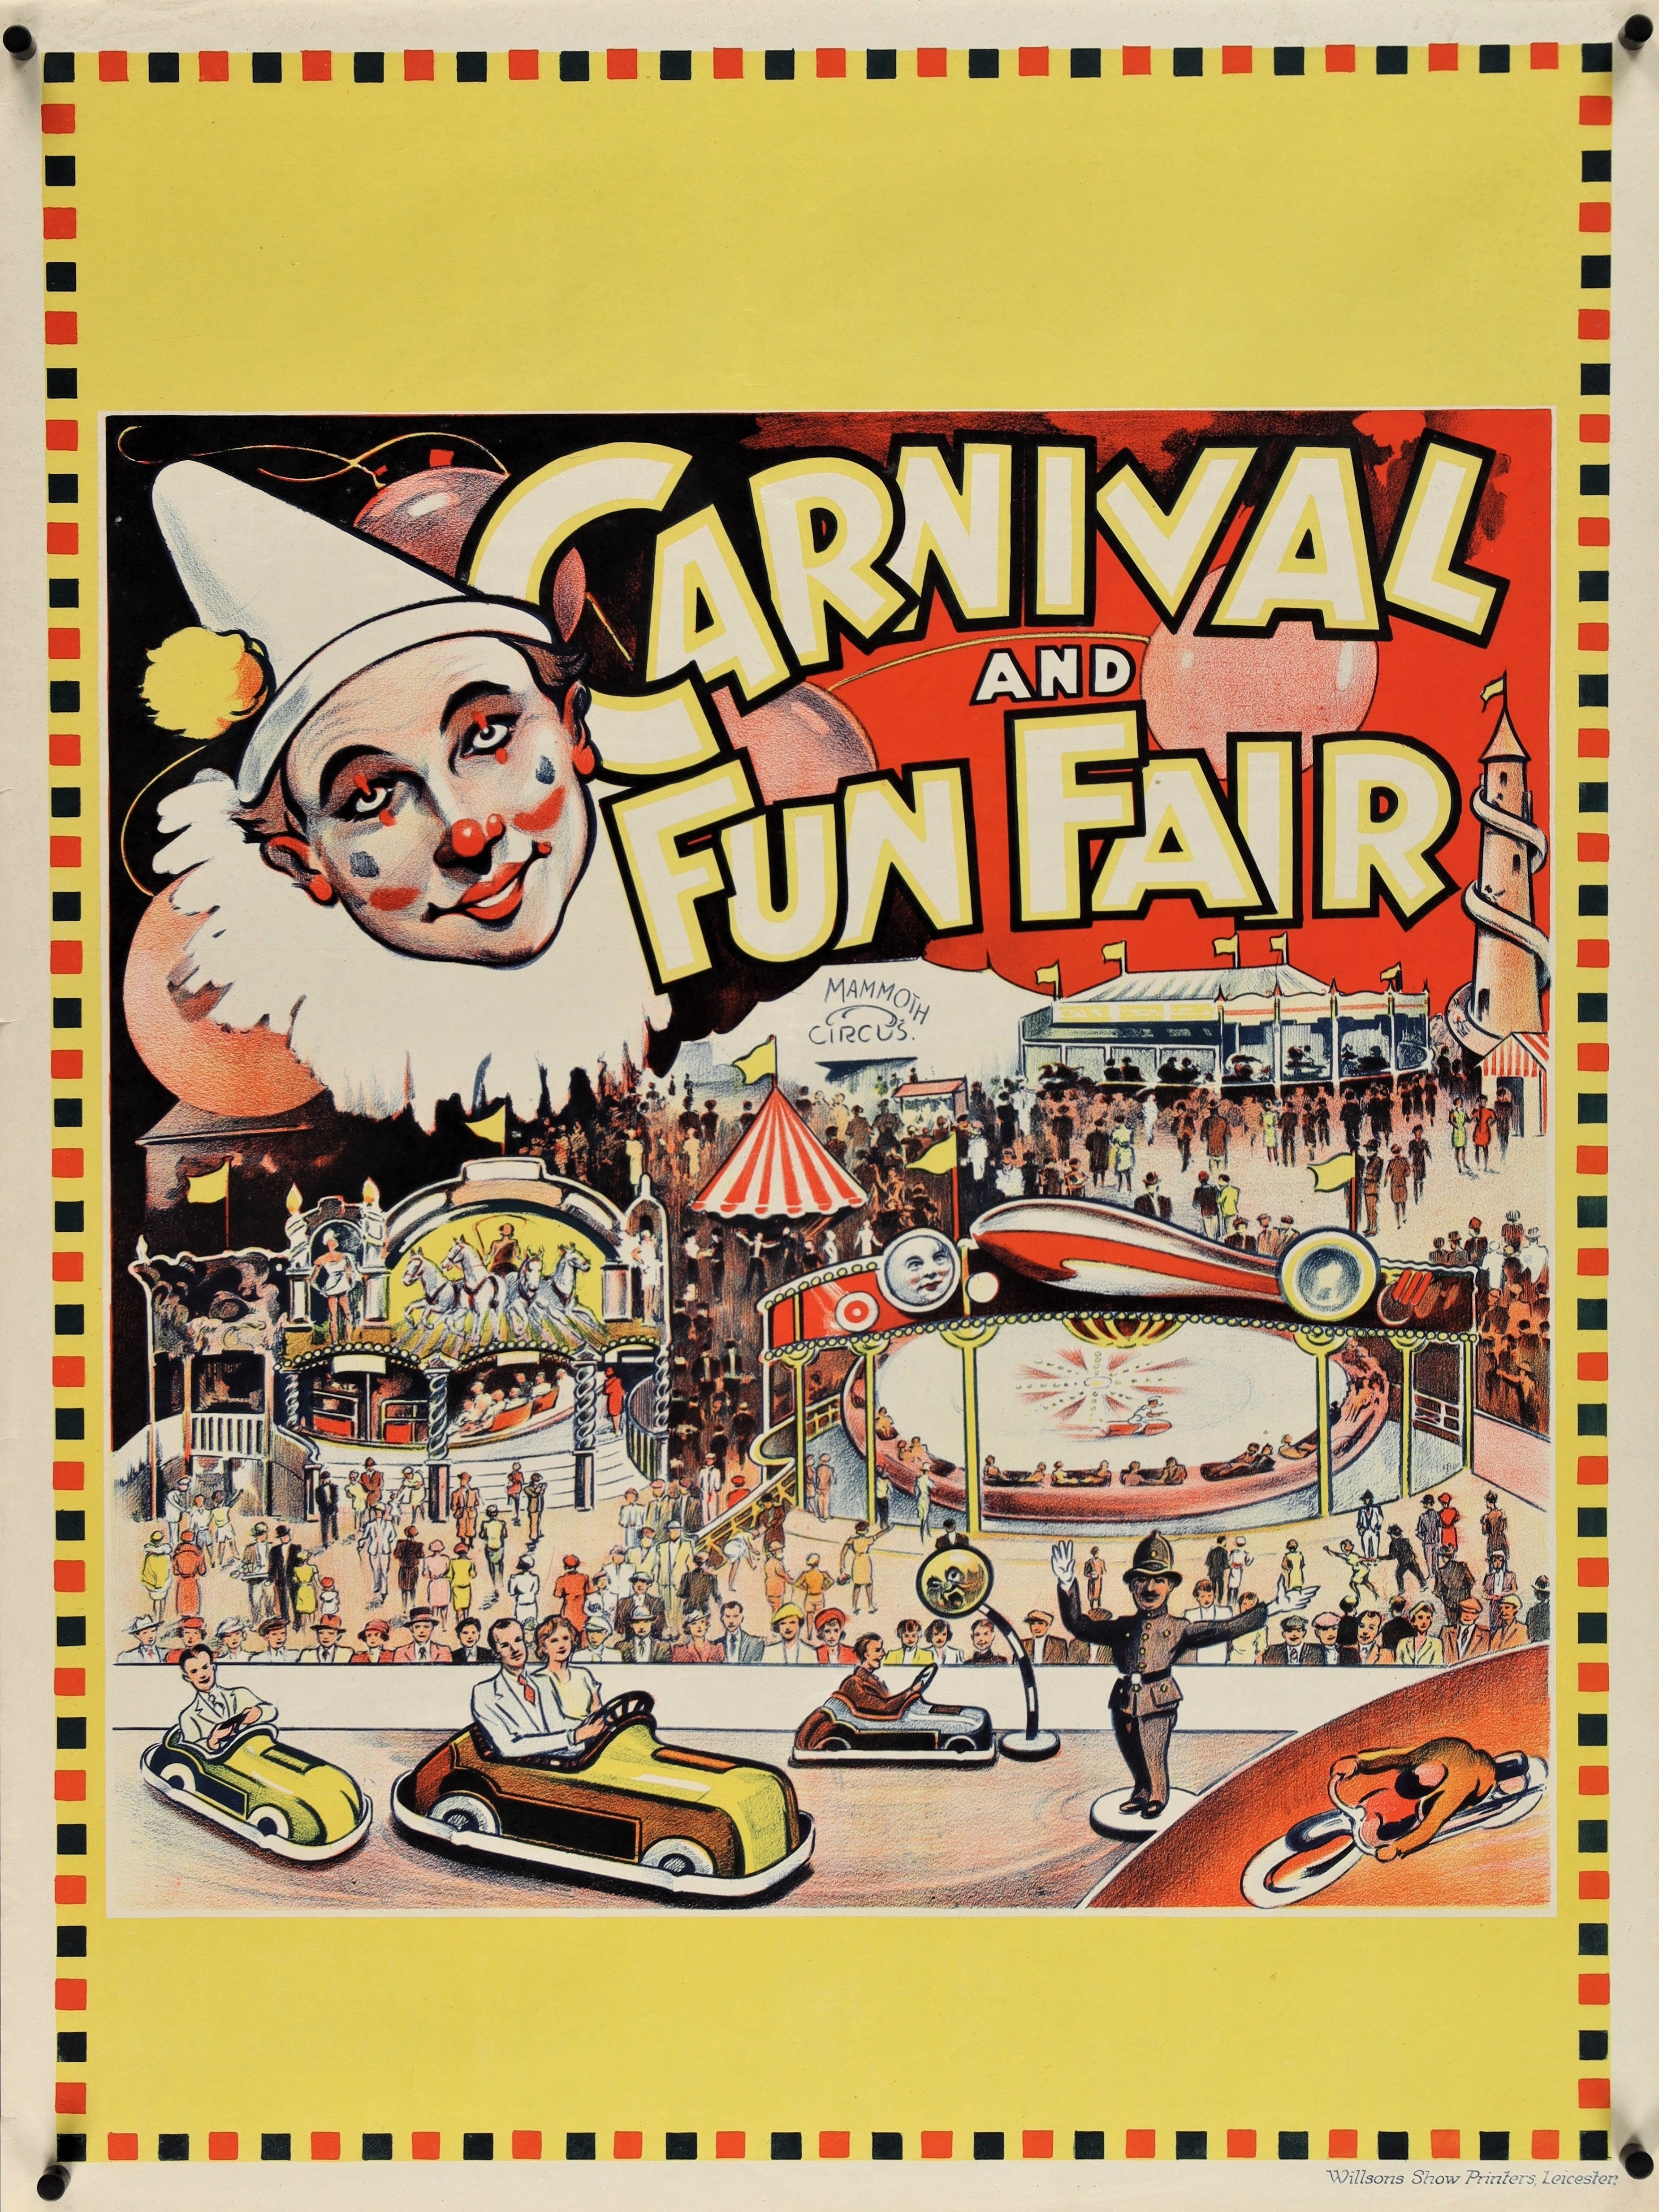 Mammoth Circus- Carnival Fun Fair